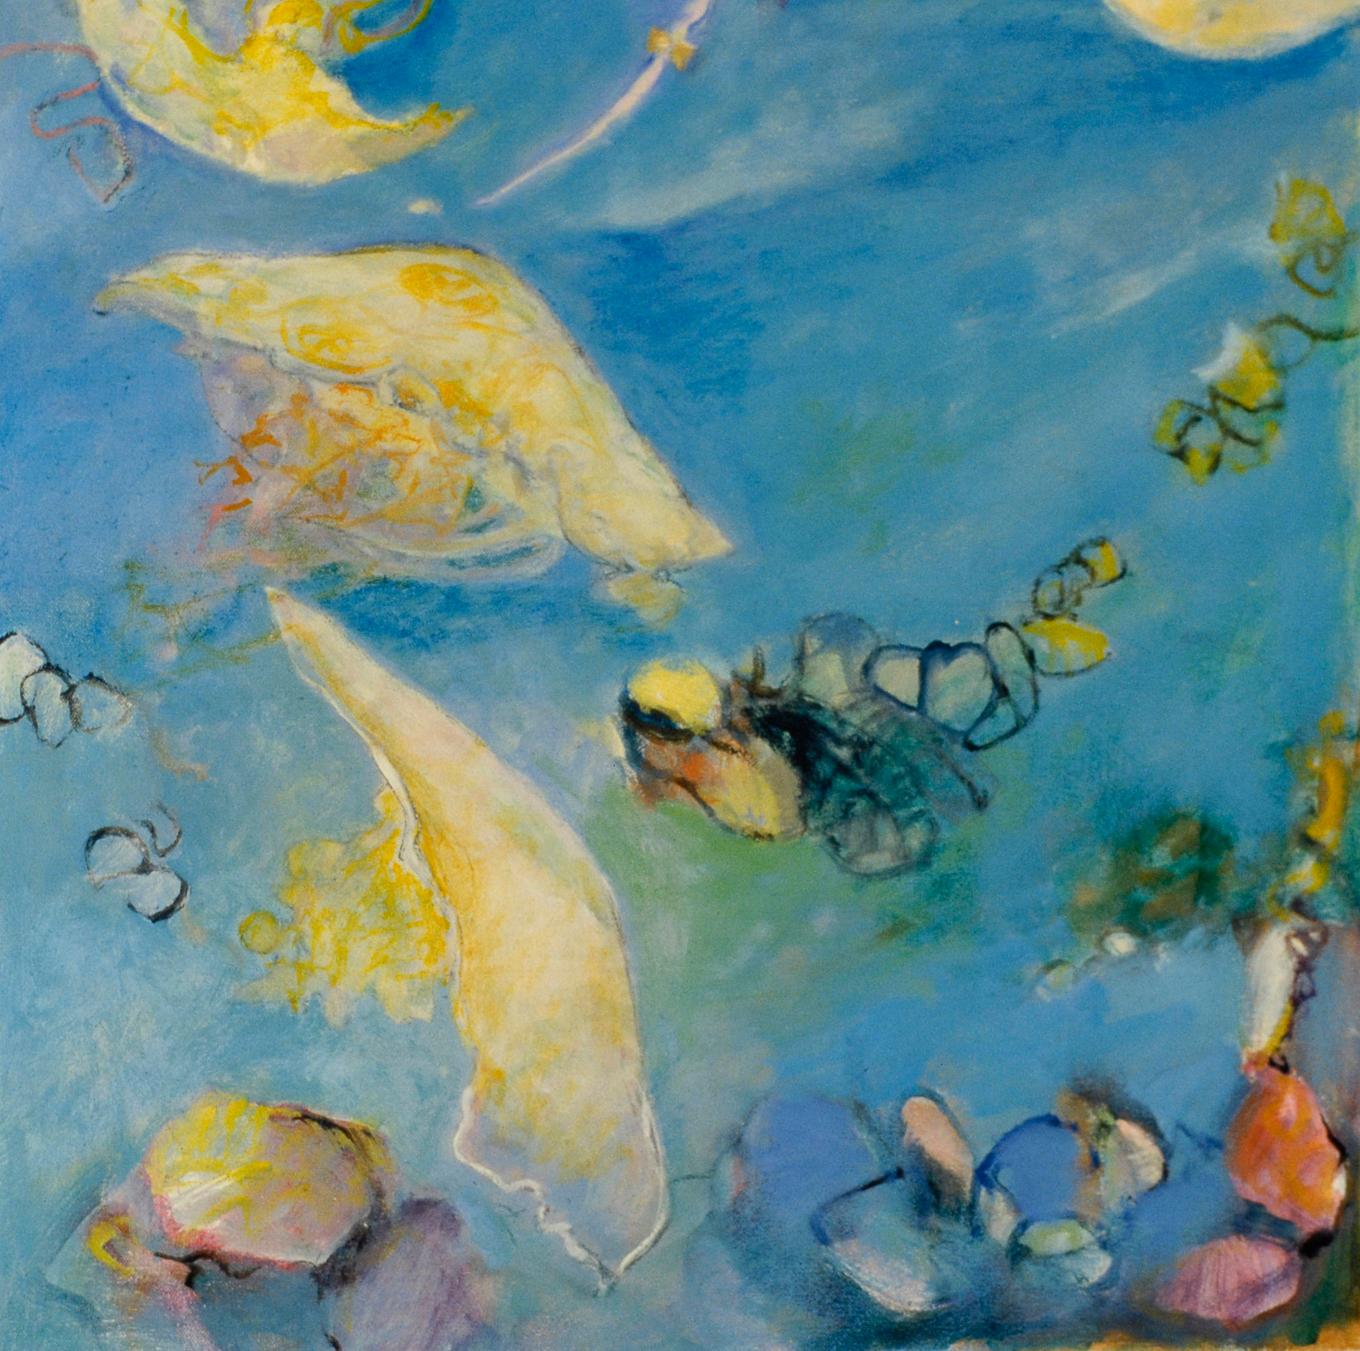 Le poisson-lanterne fait partie de la série Light in the Deep de l'artiste Ellen Hart. Le poisson-lanterne enquête  les motifs omniprésents de lumière, d'ombre et de réflexion que nous rencontrons tous quotidiennement, mais que nous prenons rarement